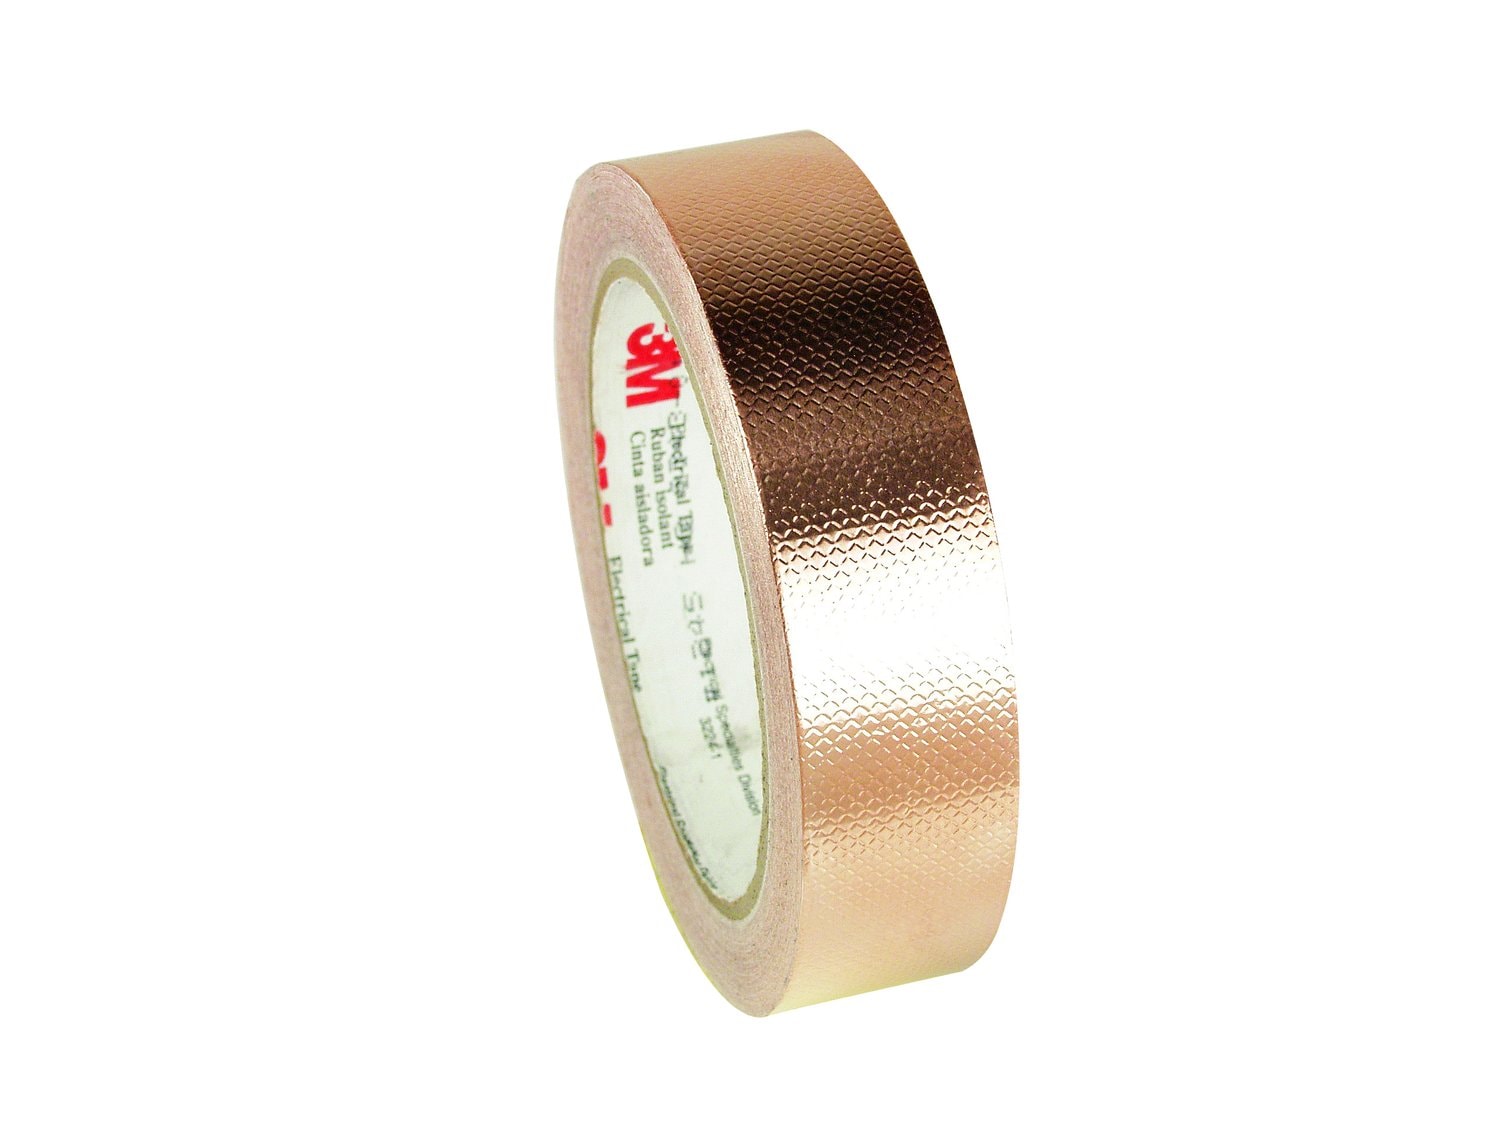 7010292289 - 3M Embossed Copper Foil EMI Shielding Tape 1245, 23 in x 18 yd, 3 in
Paper Core, 1 Roll/Case